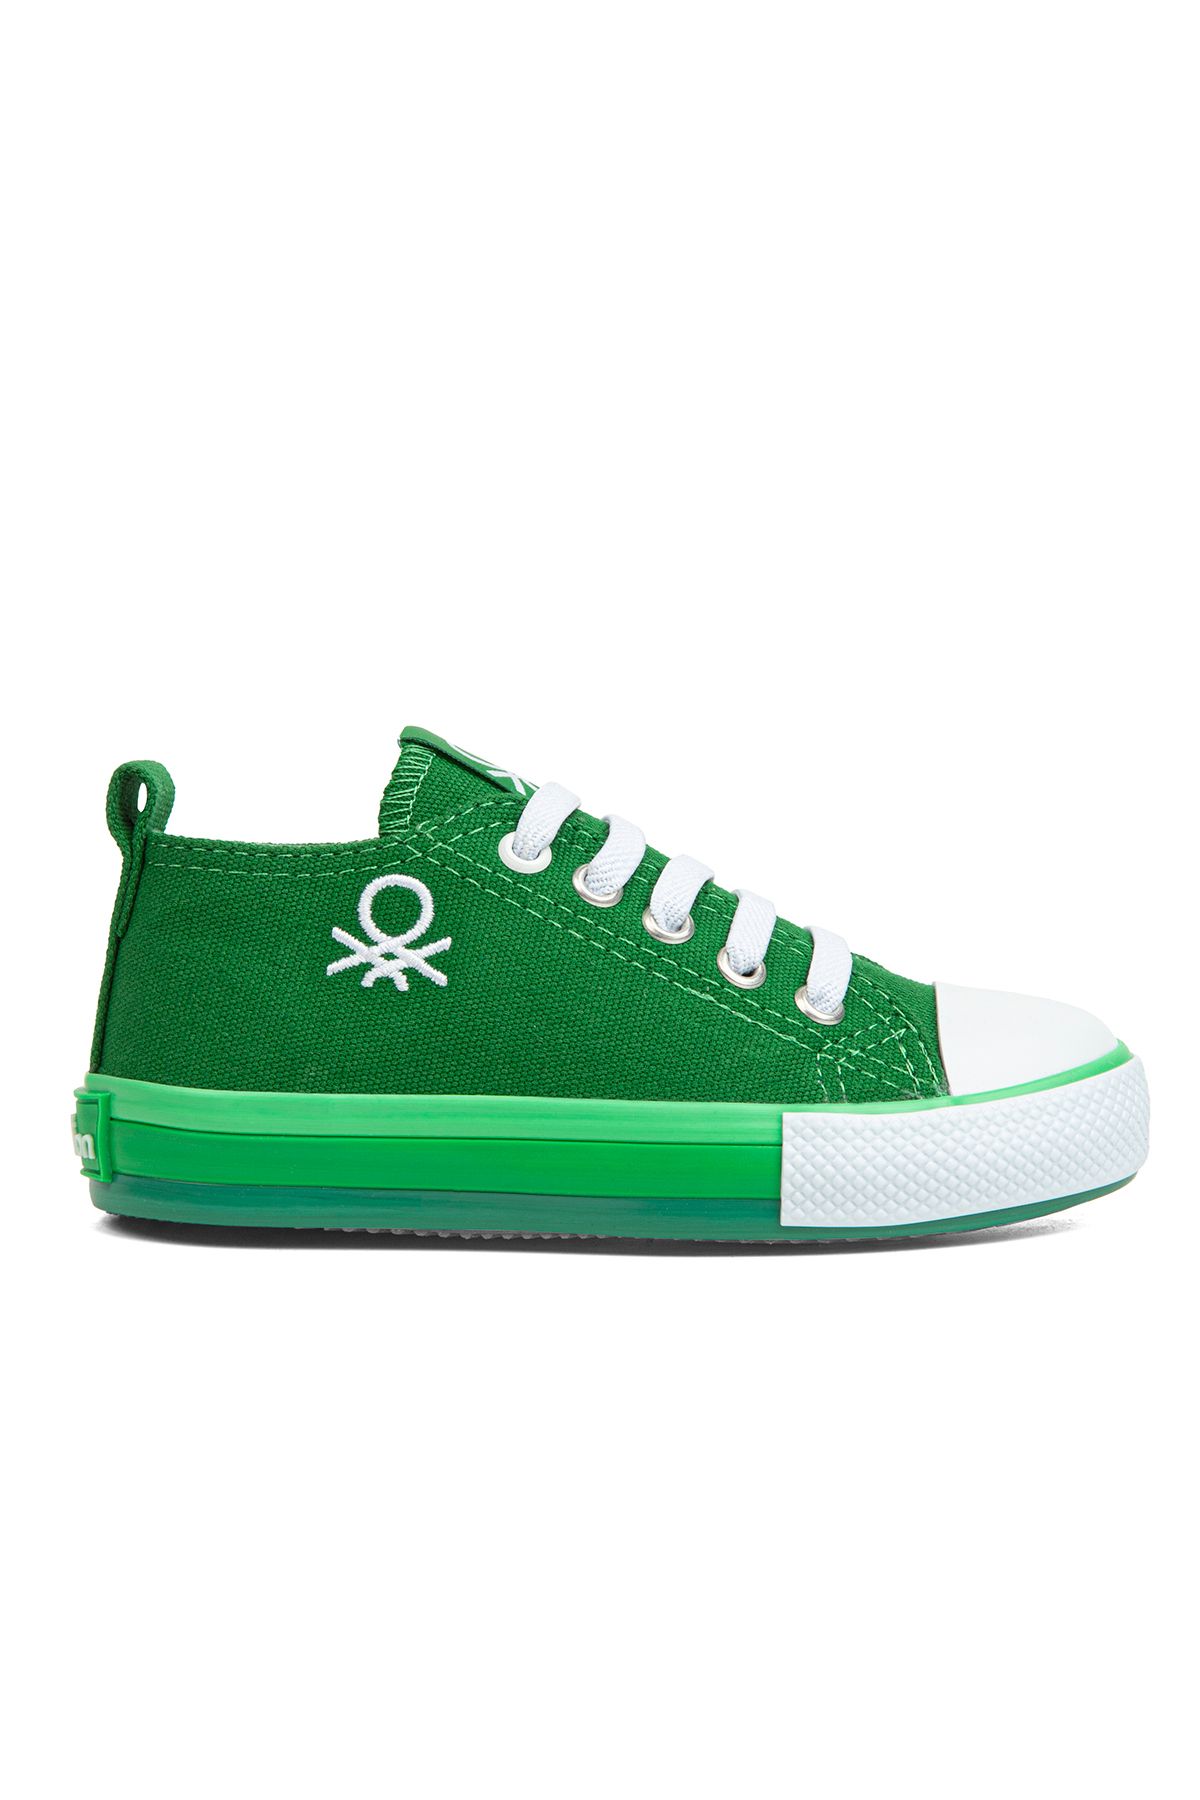 Benetton 30653 Çocuk Günlük Ayakkabı Yeşil